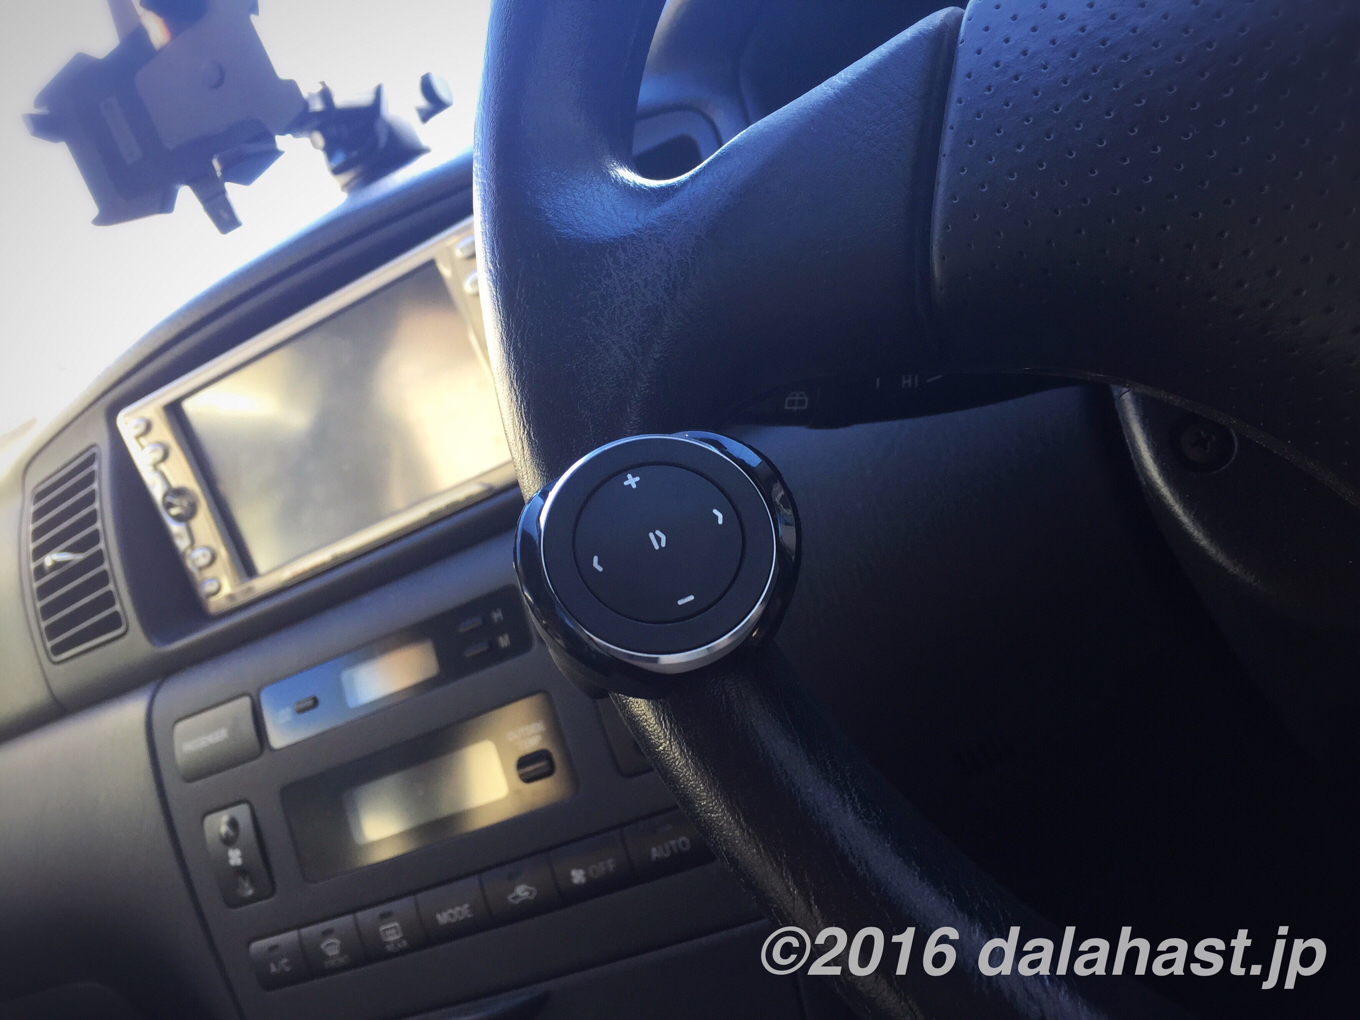 レビュー 車のハンドルに装着して指先でスマホの音楽を自在に操作できる Bluetoothリモコン Satechi サテチ Bt005 Dalahast Jp 週末限定ビストロパパの日常関心空間